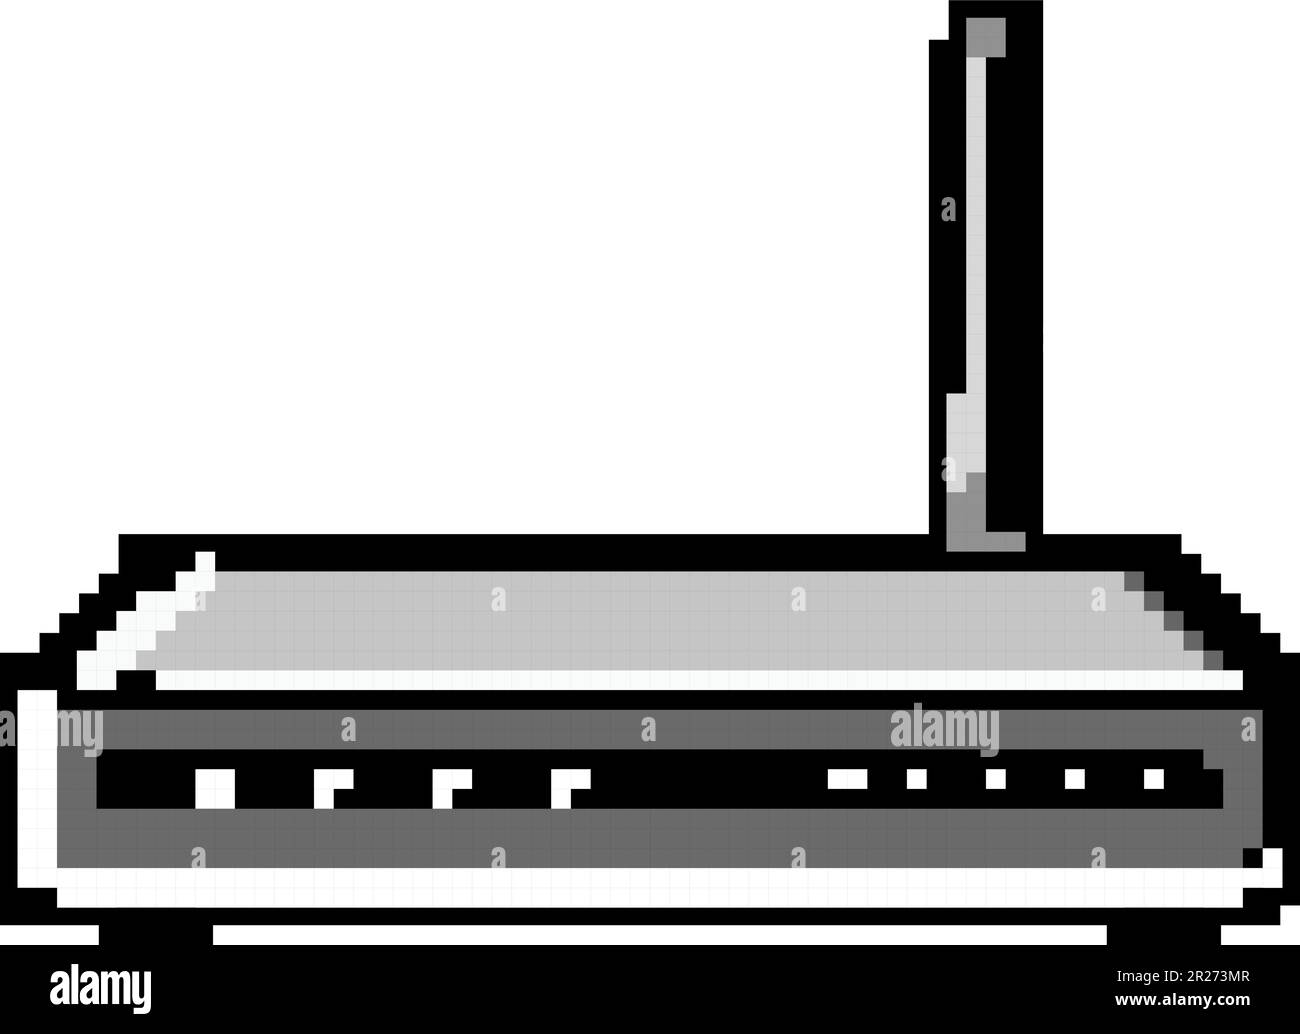 illustrazione vettoriale pixel art del gioco modem dsl wireless Illustrazione Vettoriale